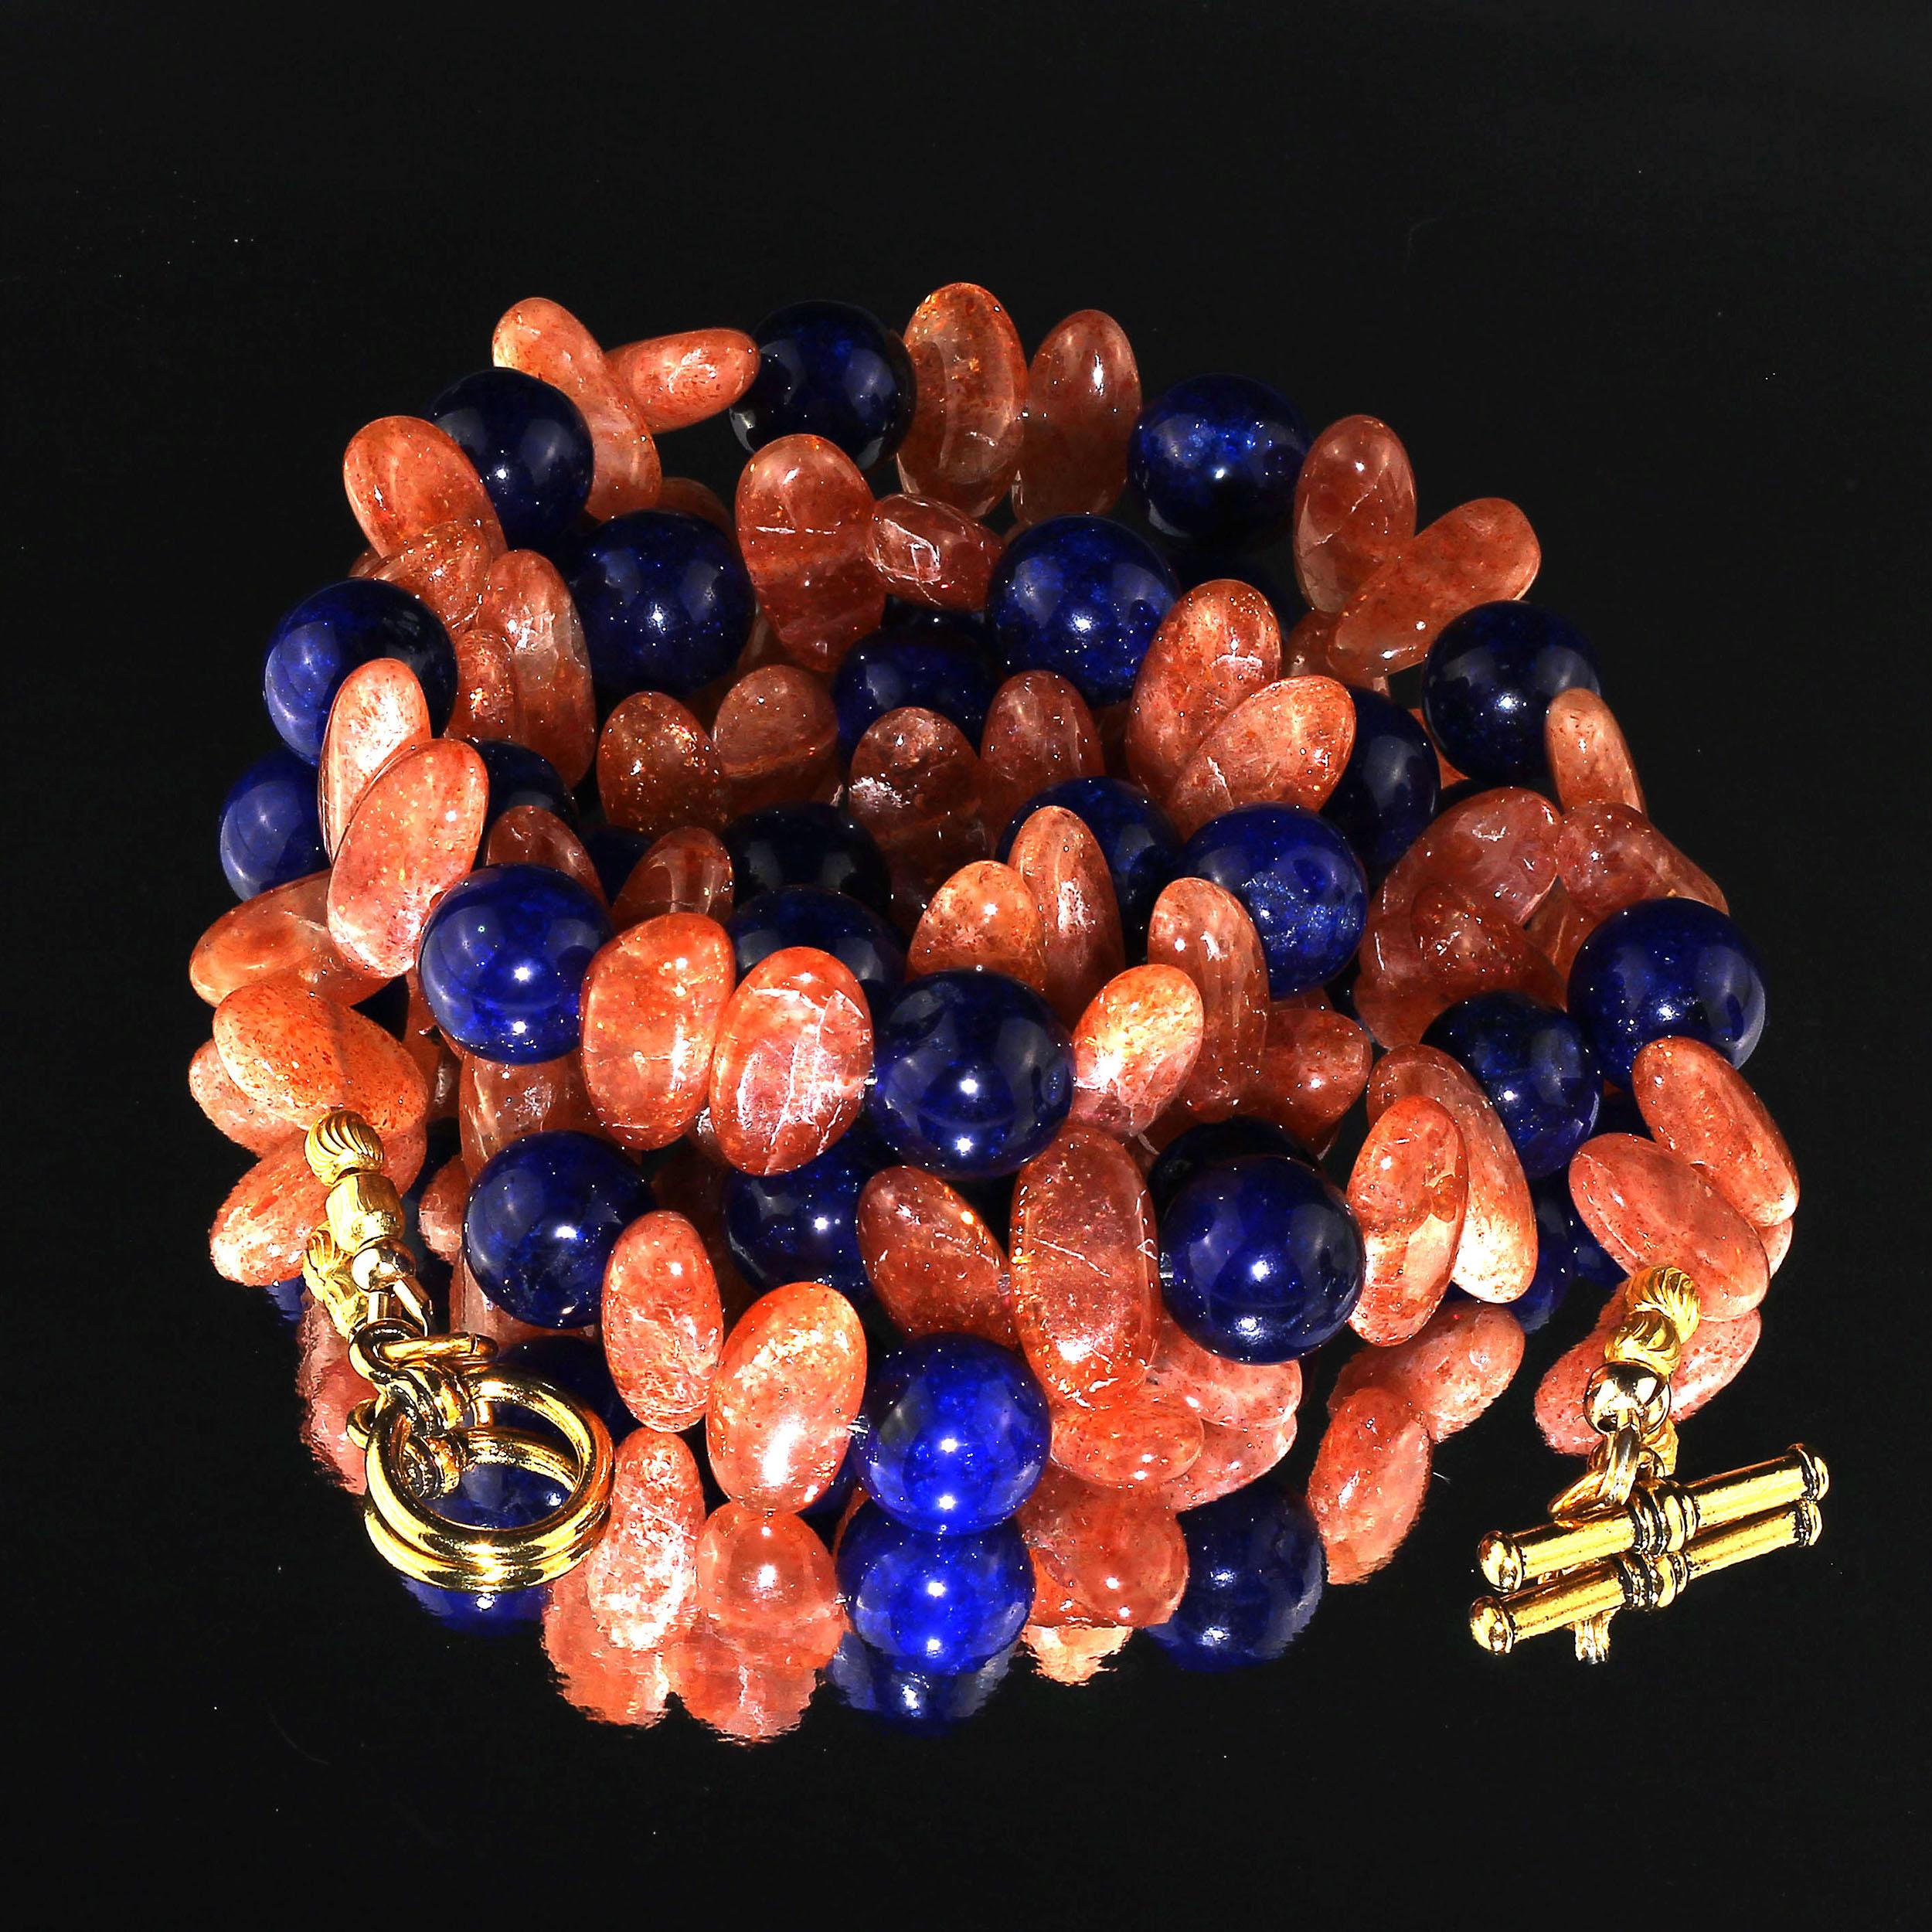  AJD-Halskette aus faszinierendem ovalem glitzerndem Sonnenstein und blauem Achat, Geschenkidee!